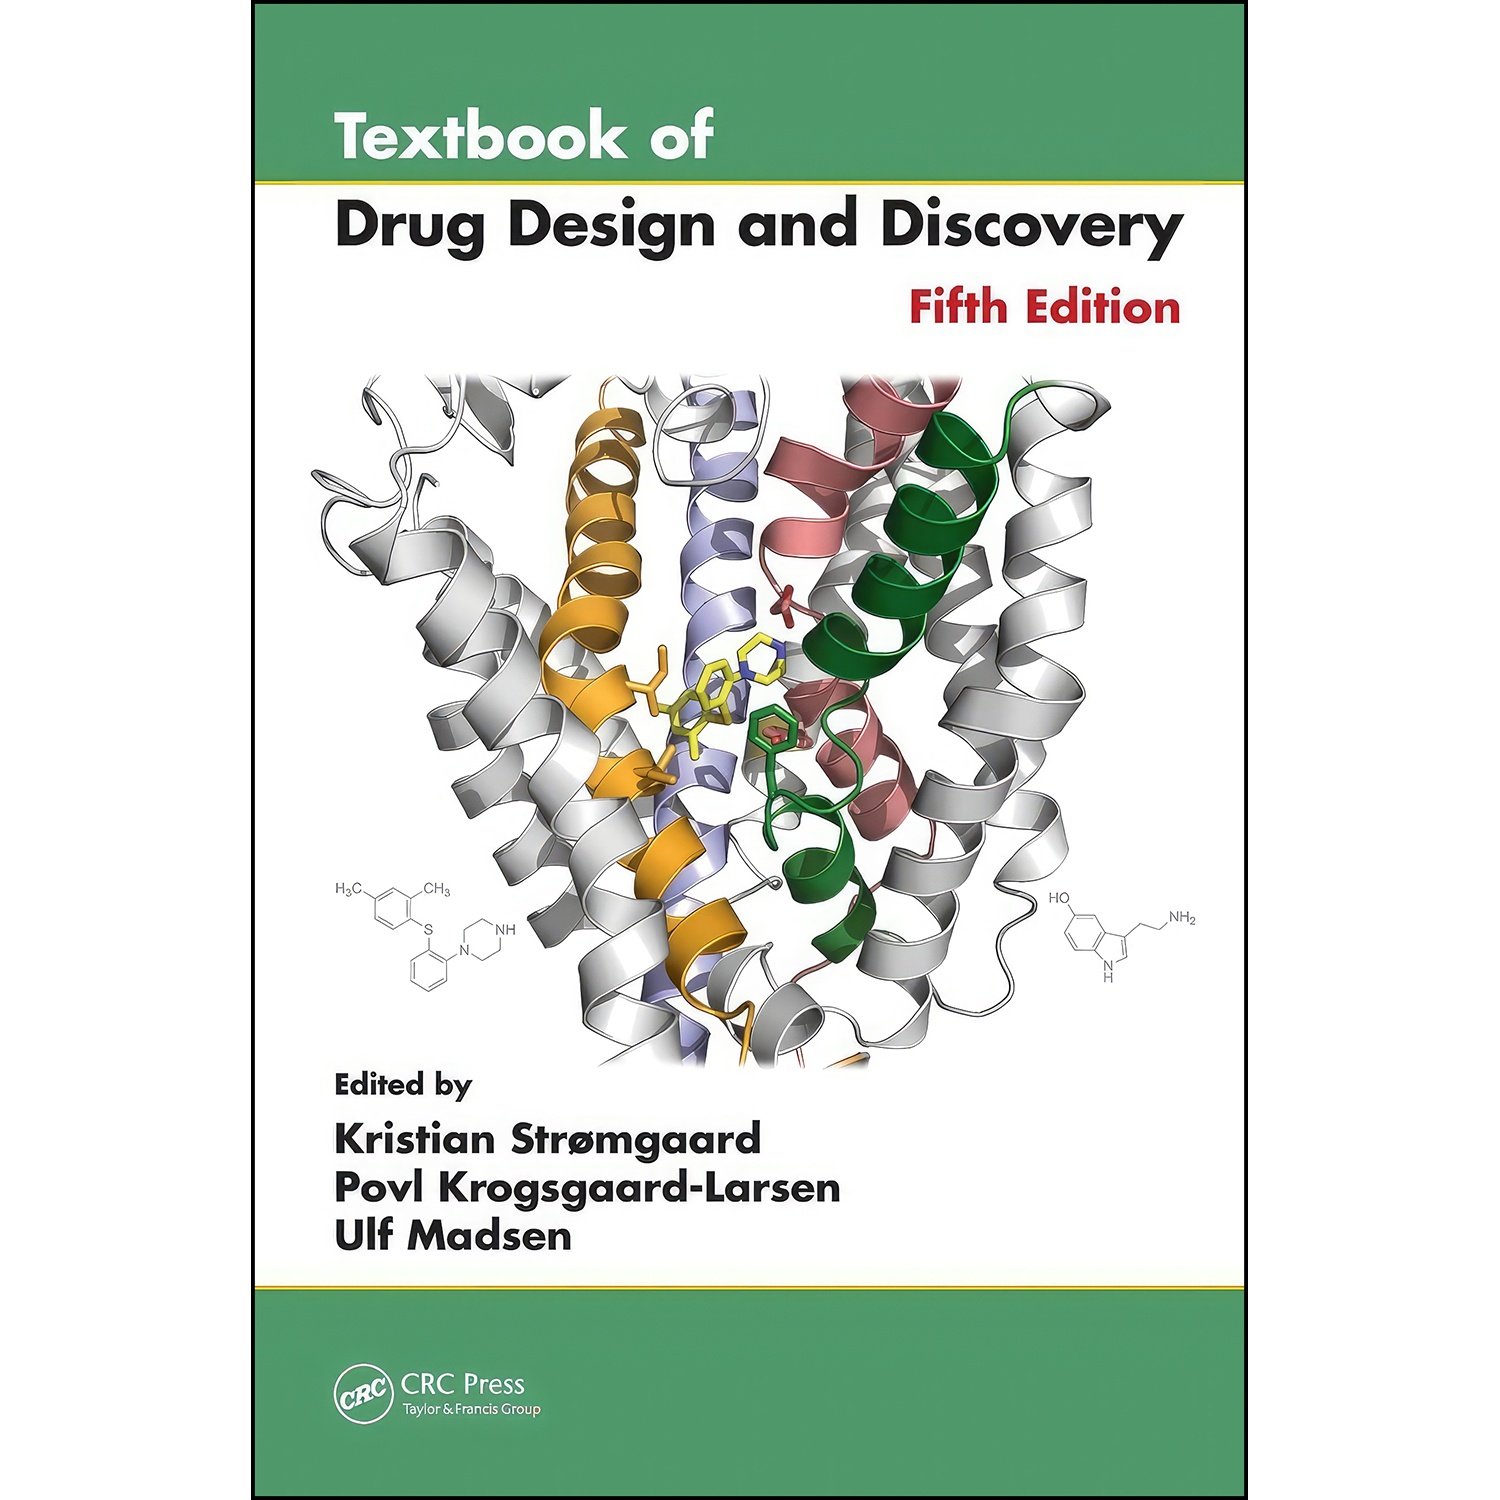 کتاب Textbook of Drug Design and Discovery اثر جمعي از نويسندگان انتشارات CRC Press